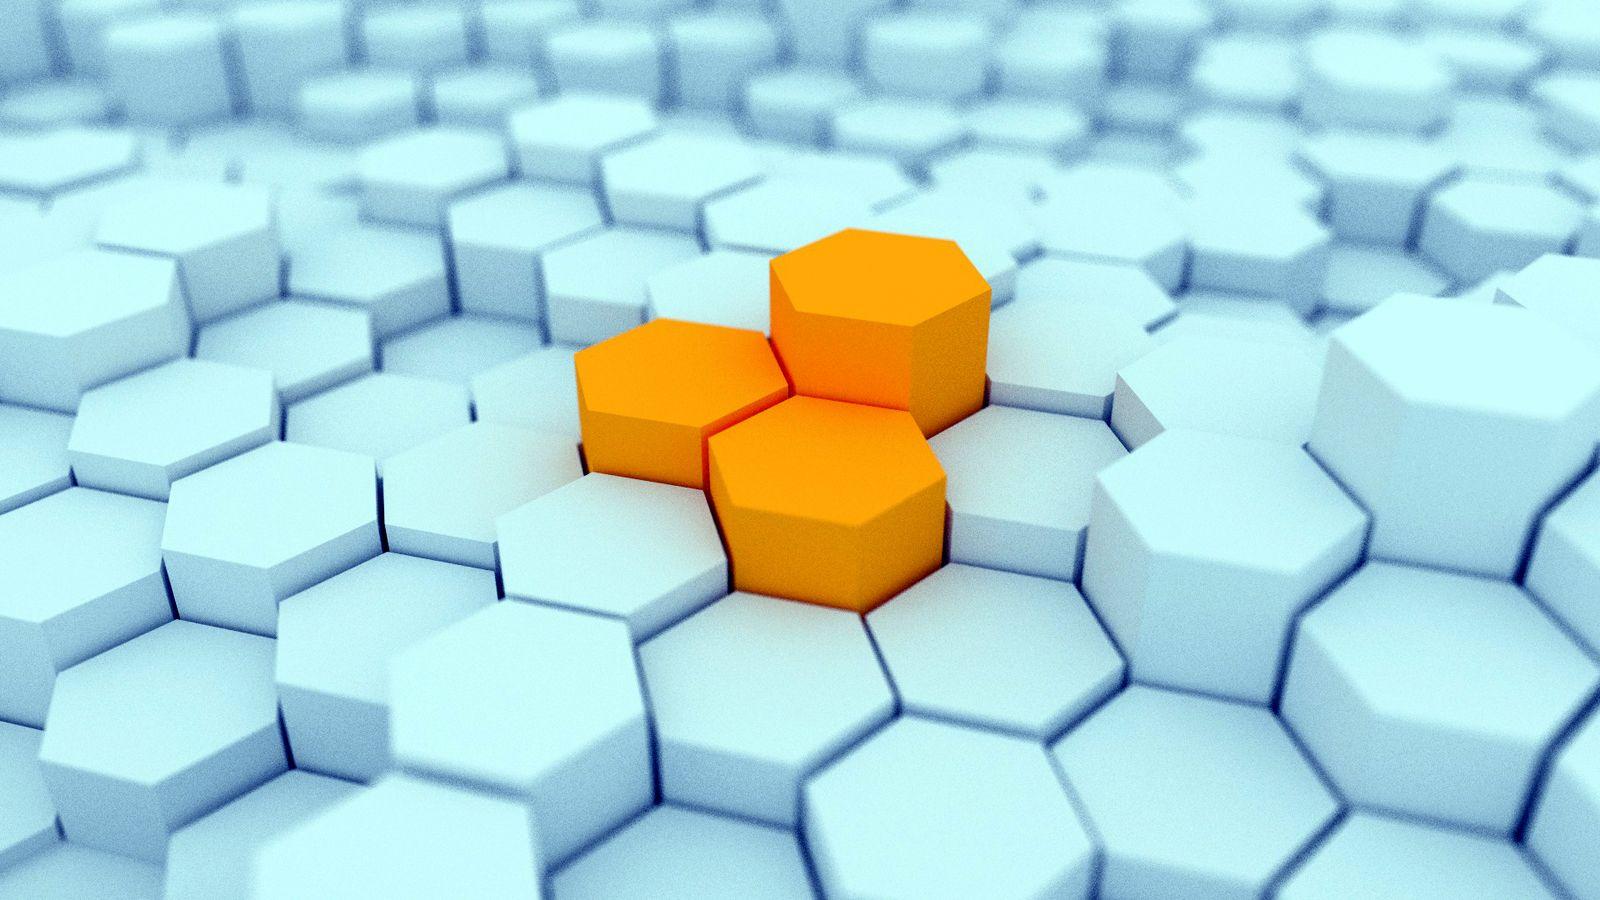 3D Hexagon Blocks HD WallpaperD Logo's